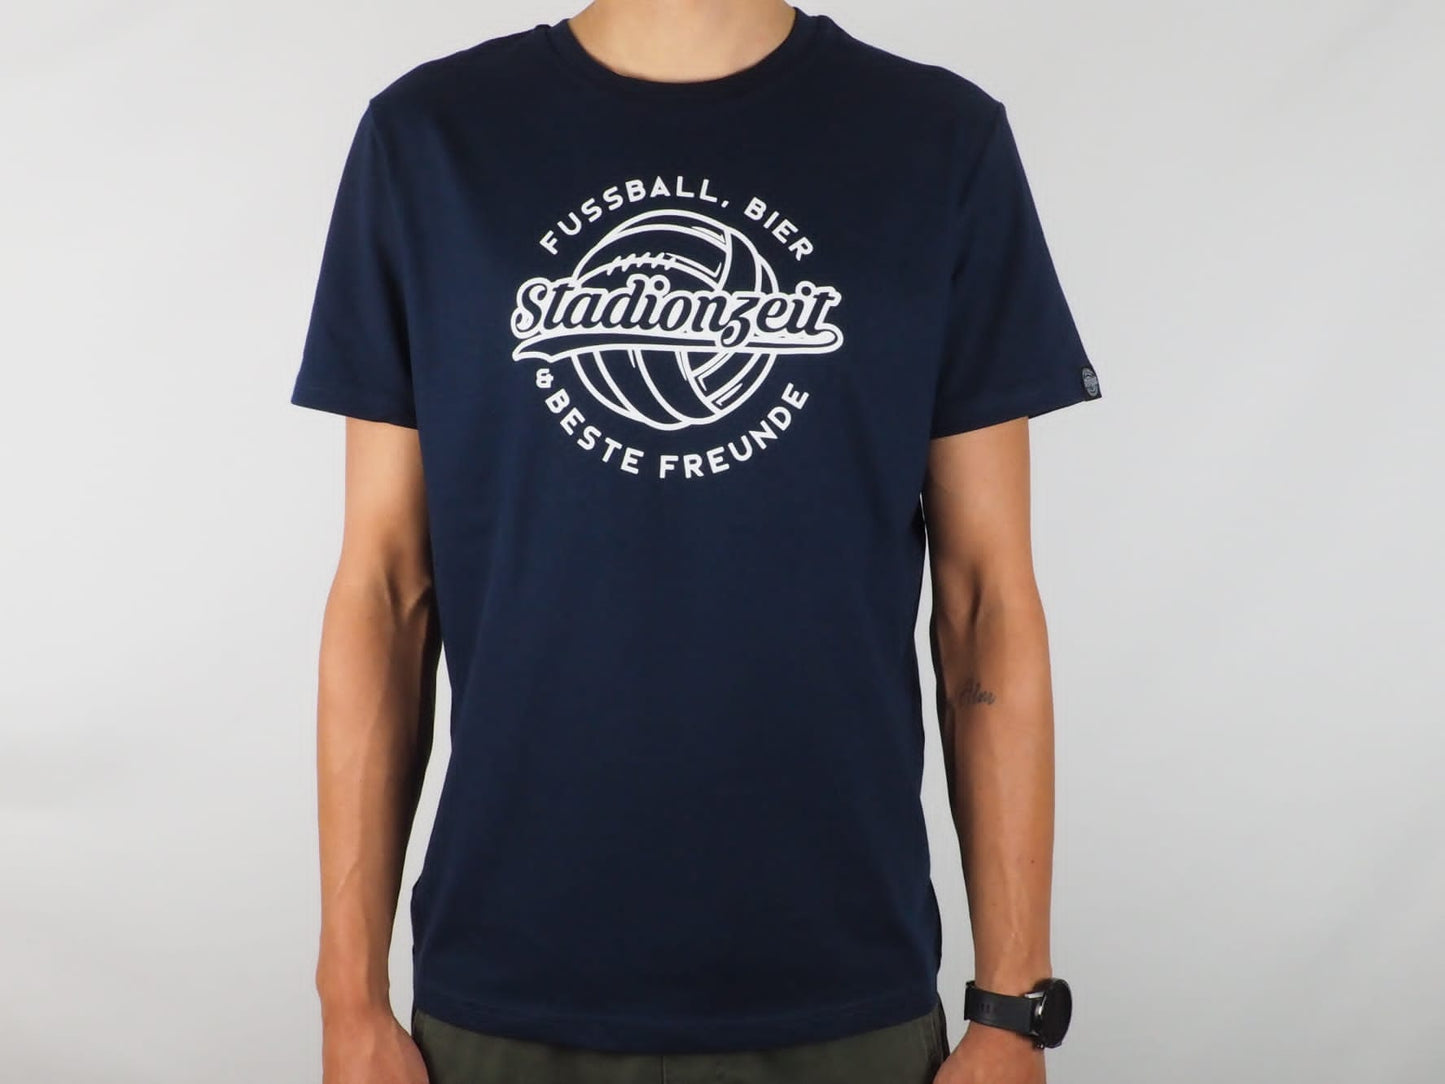 Shirt - "Fussball, Bier & beste Freunde" | Unisex